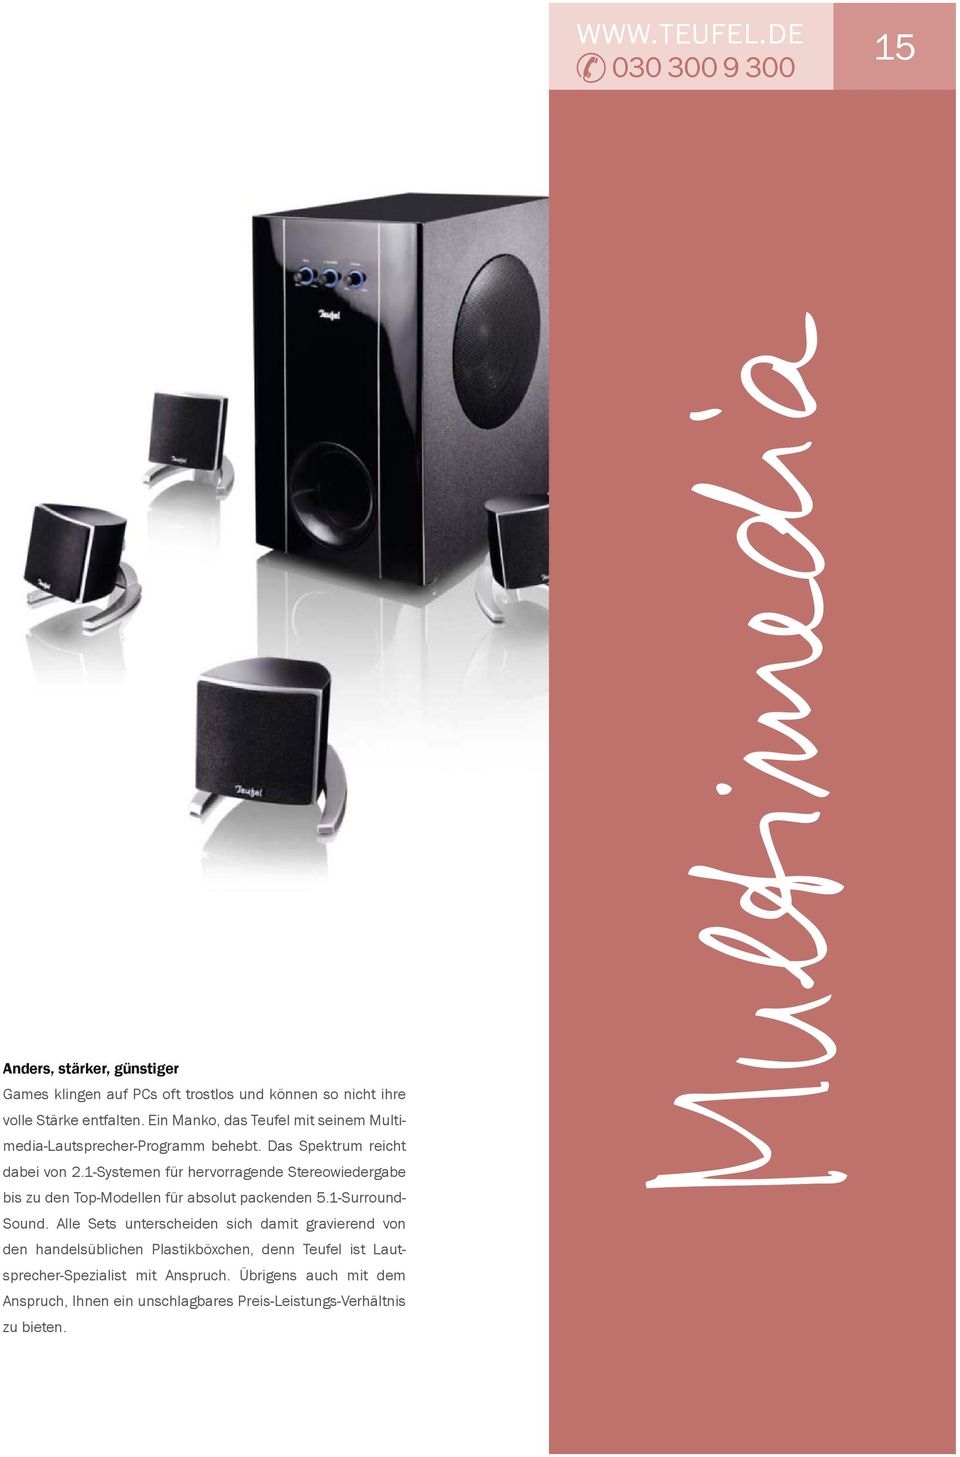 1-Systemen für hervorragende Stereowiedergabe bis zu den Top-Modellen für absolut packenden 5.1-Surround- Sound.